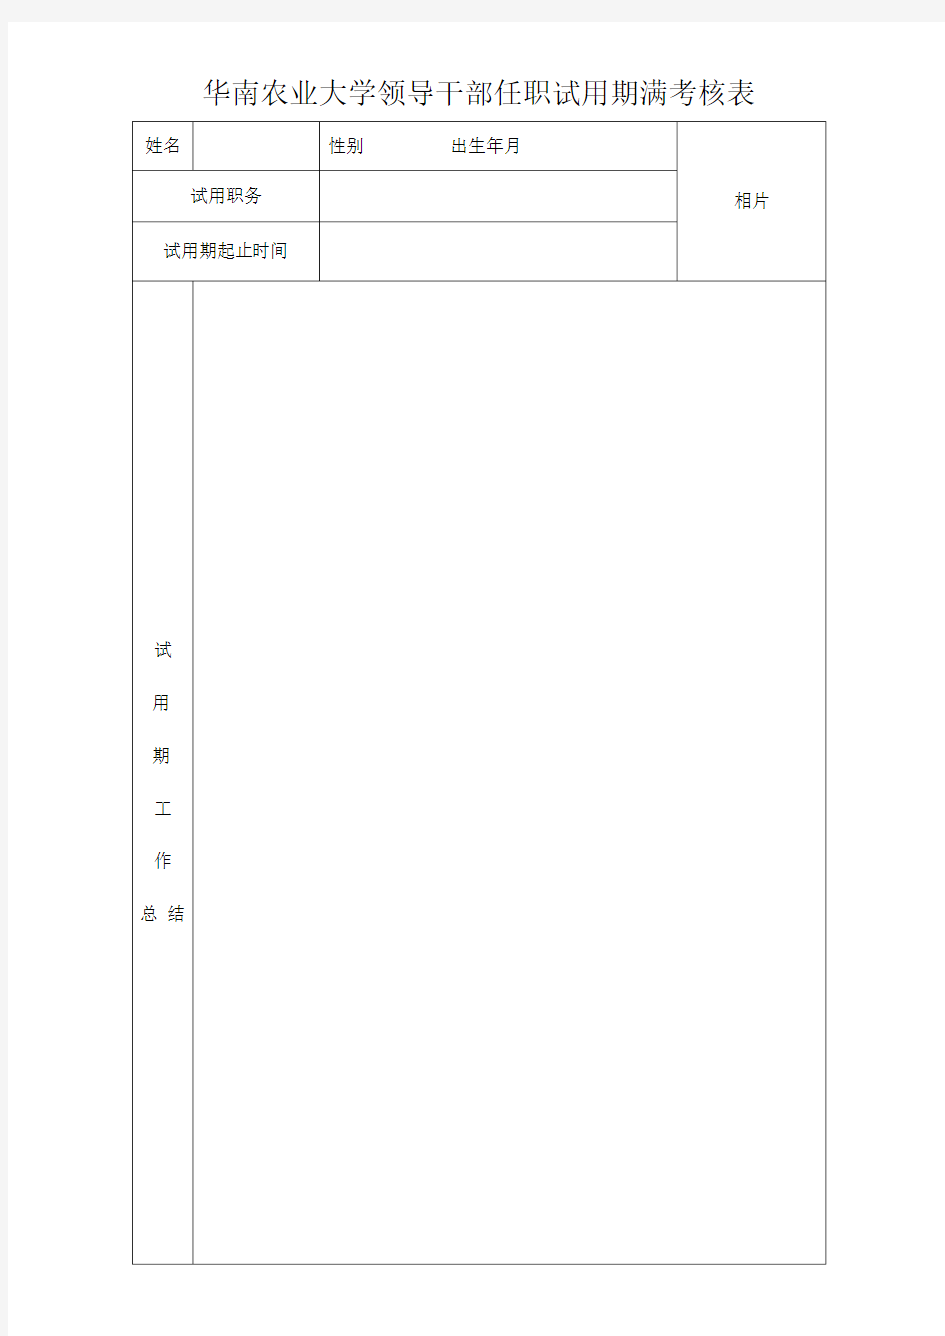 华南农业大学领导干部任职试用期满考核表